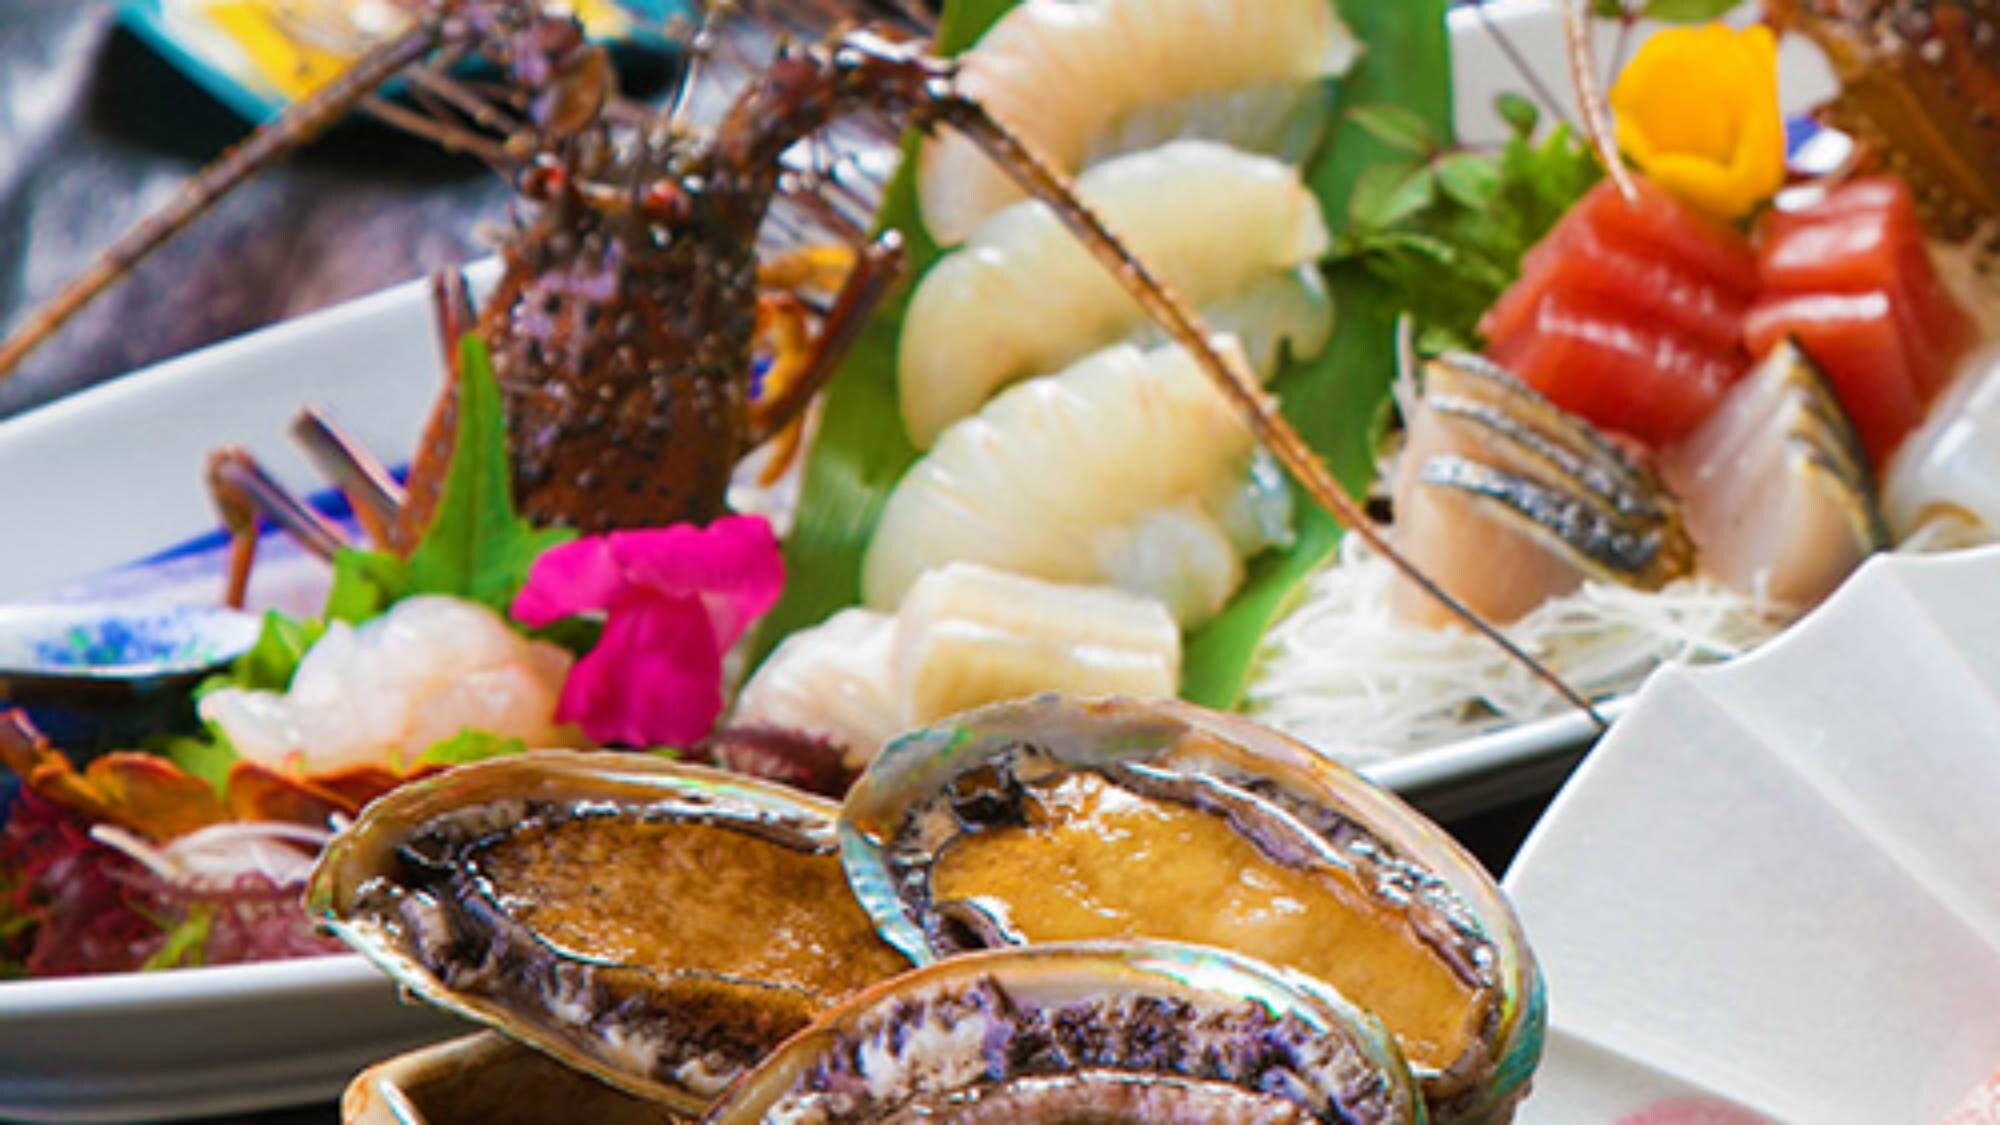 [ไคเซกิที่เน้น Cospa] อาหารทะเลไคเซกิที่จะเพลิดเพลินกับ "หอยเป๋าฮื้อ" และ "กุ้งมังกร"